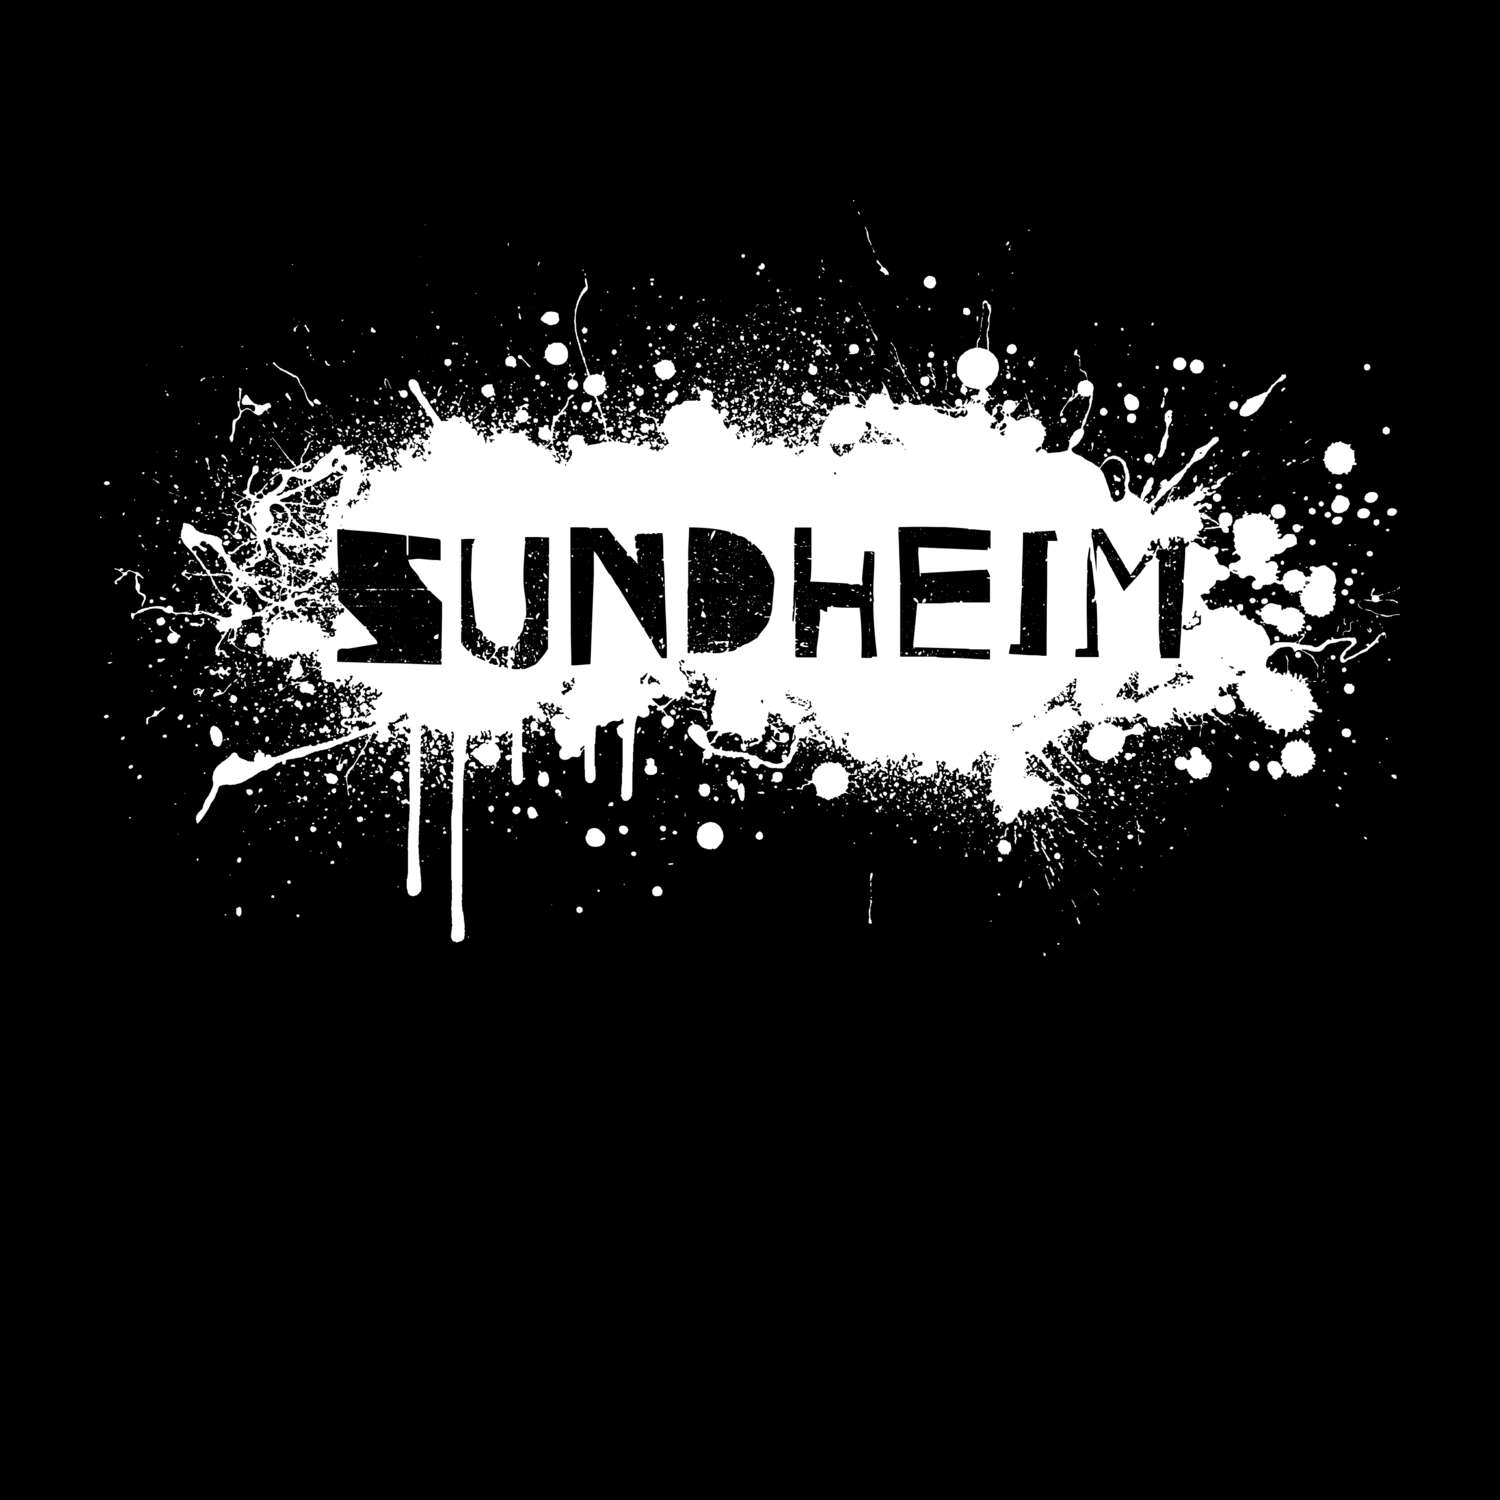 Sundheim T-Shirt »Paint Splash Punk«